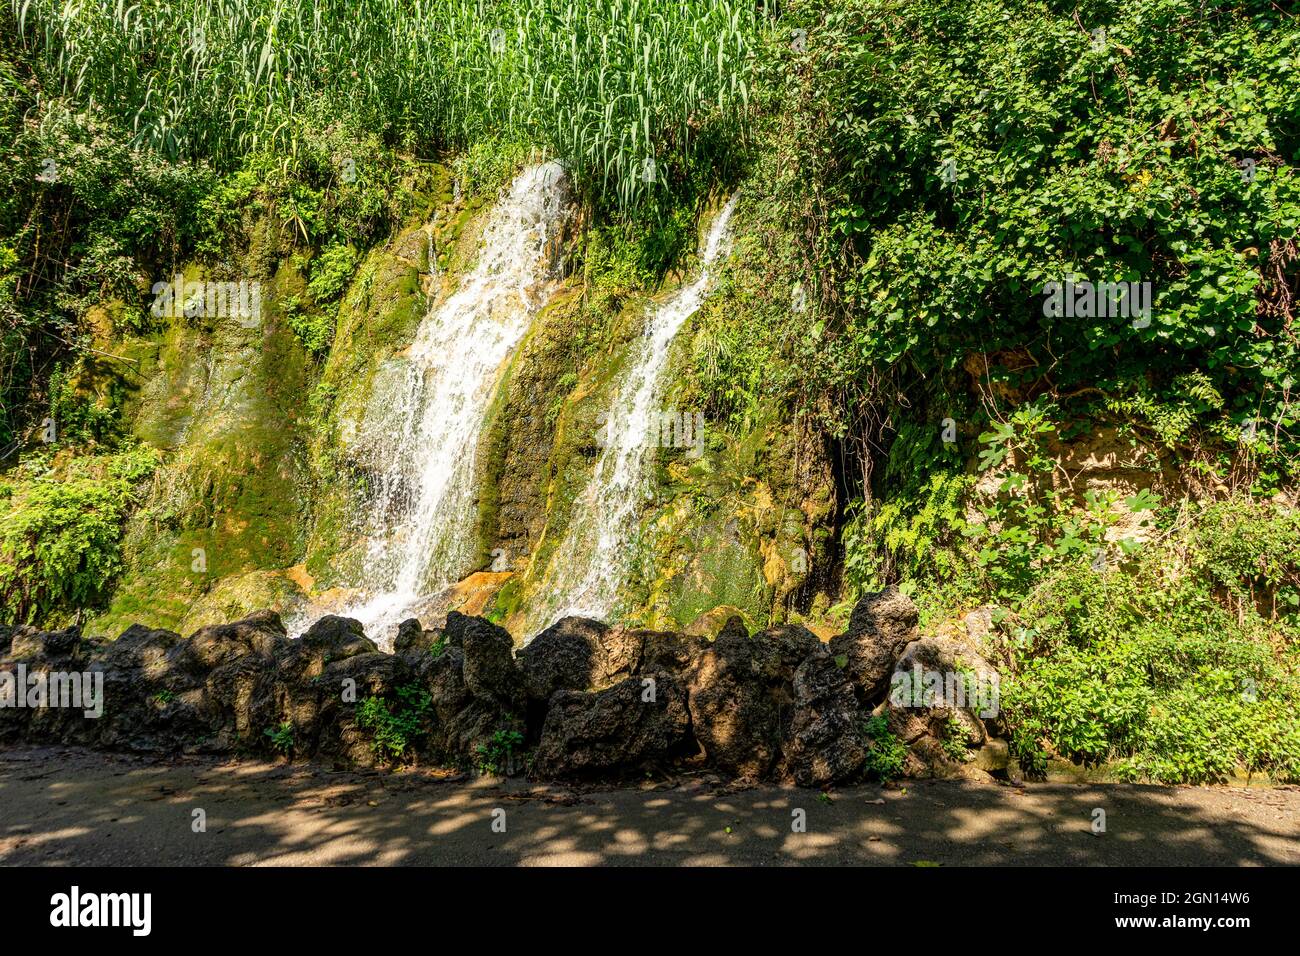 La chute d'eau de la fiance, village Navajas, province de Castellon, Alto Palancia, Espagne. Banque D'Images